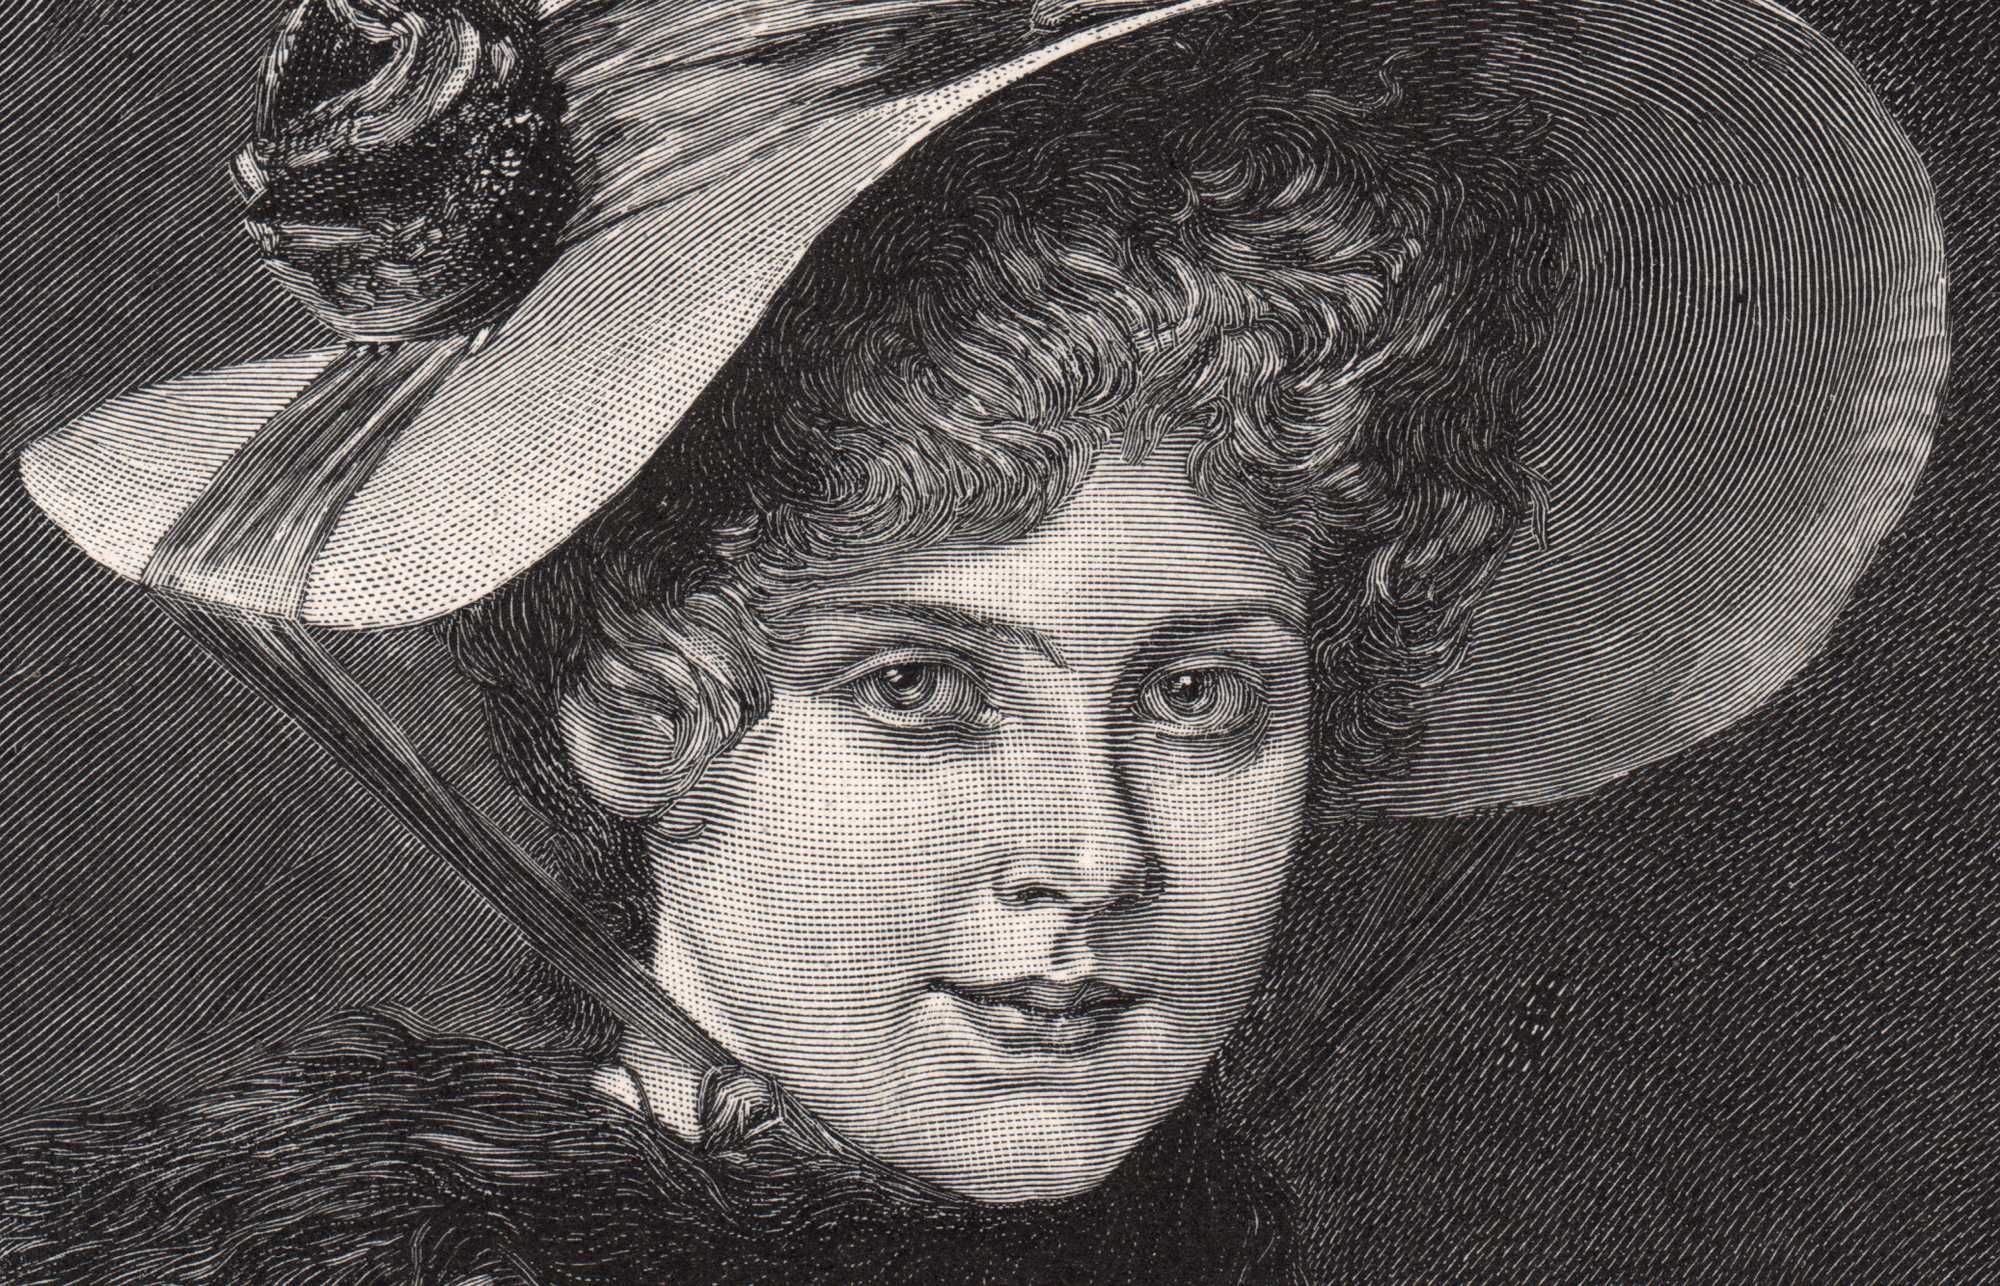 Dama w kapeluszu. Piękny drzeworyt ilustracyjny 1894 r. autentyk